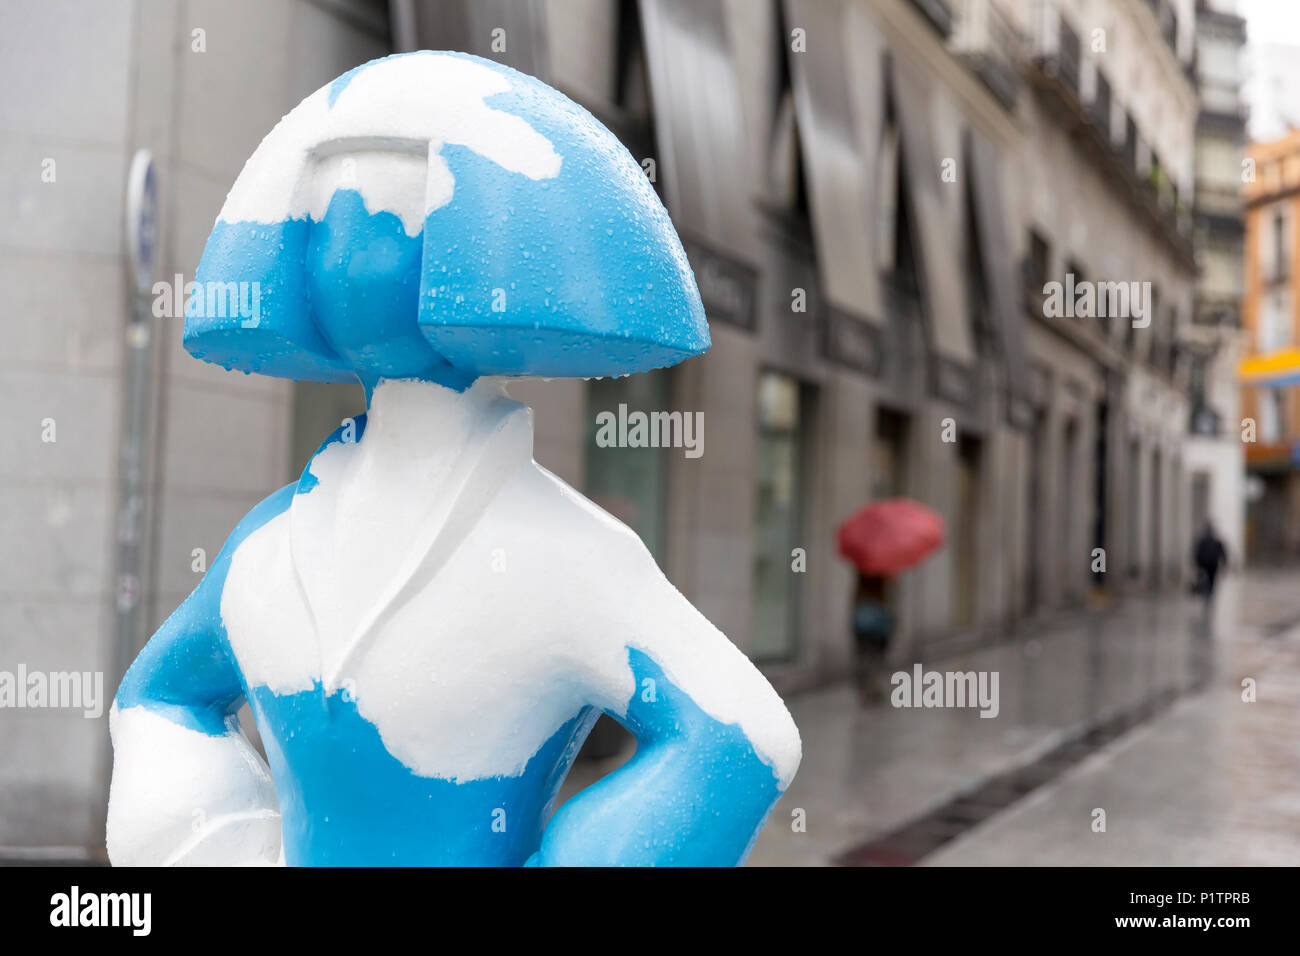 Madrid, Espagne : une femme avec un parapluie passe un 'Menina' sculpture le long de la Calle de Tetuan. La sculpture fait partie de la 'galerie' Madrid eninas dans tr Banque D'Images